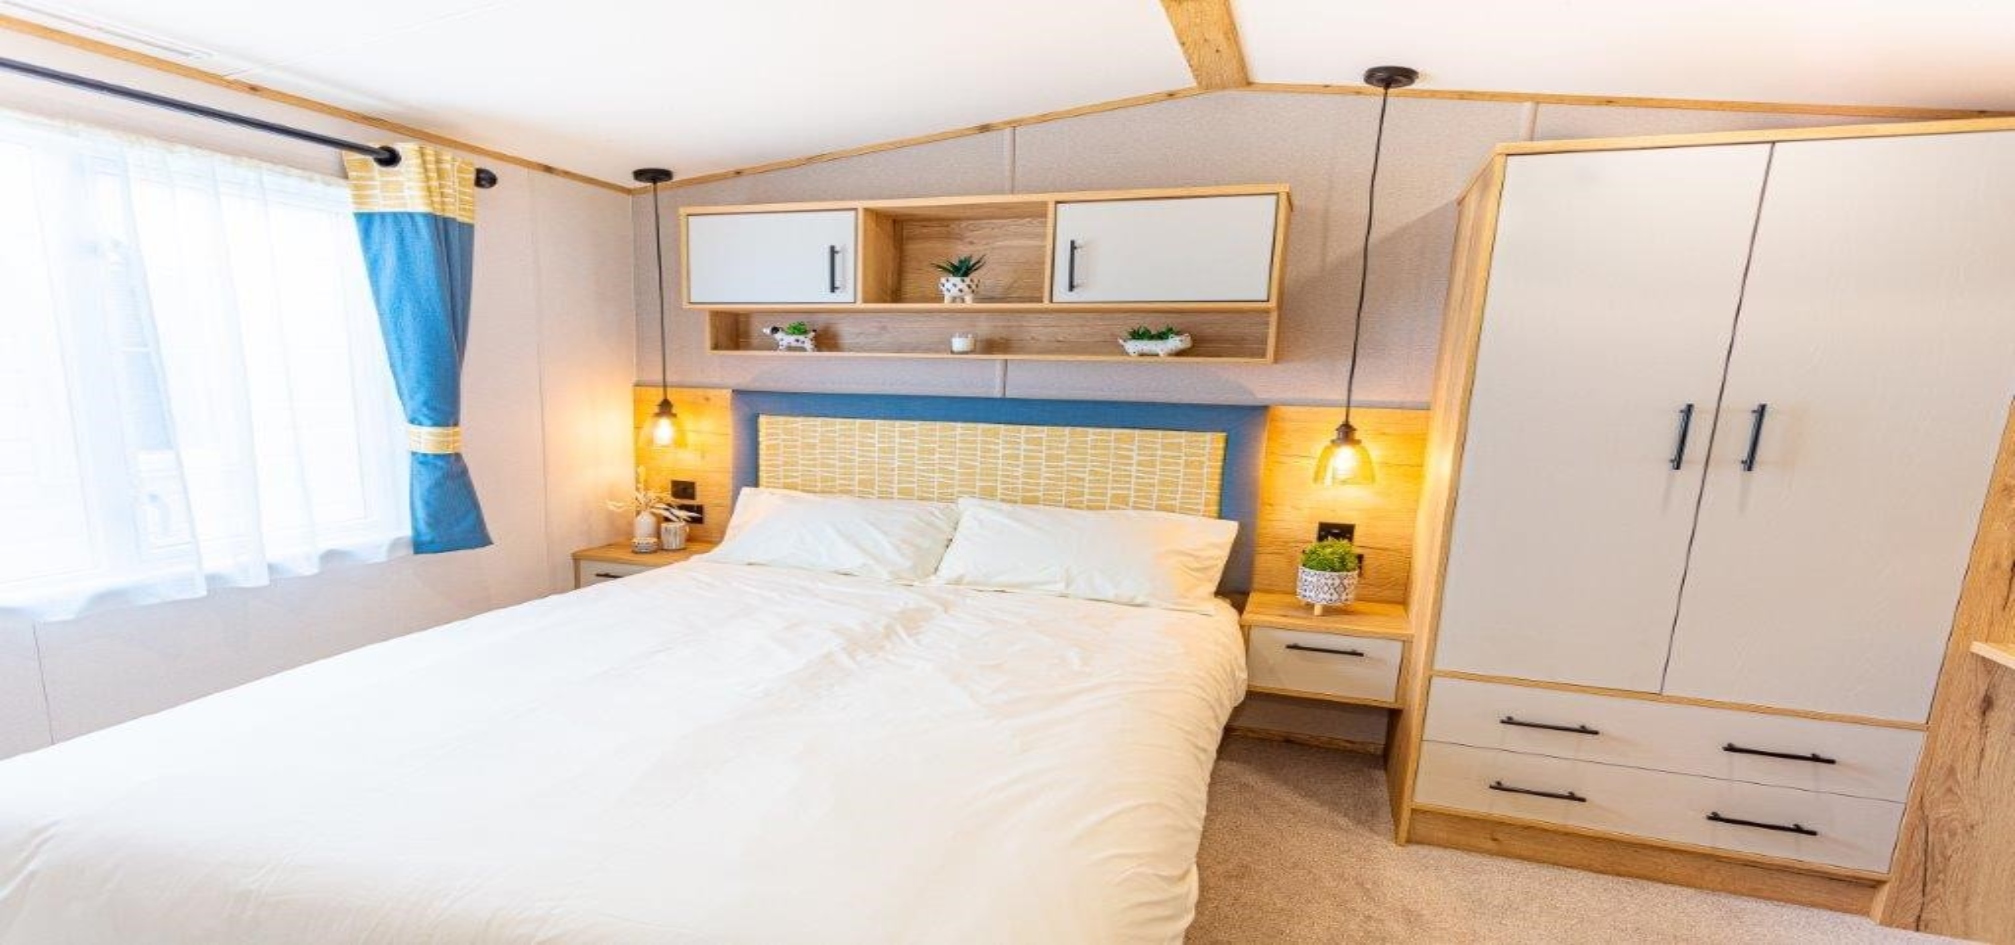 standard bedroom in our caravan park Lancashire